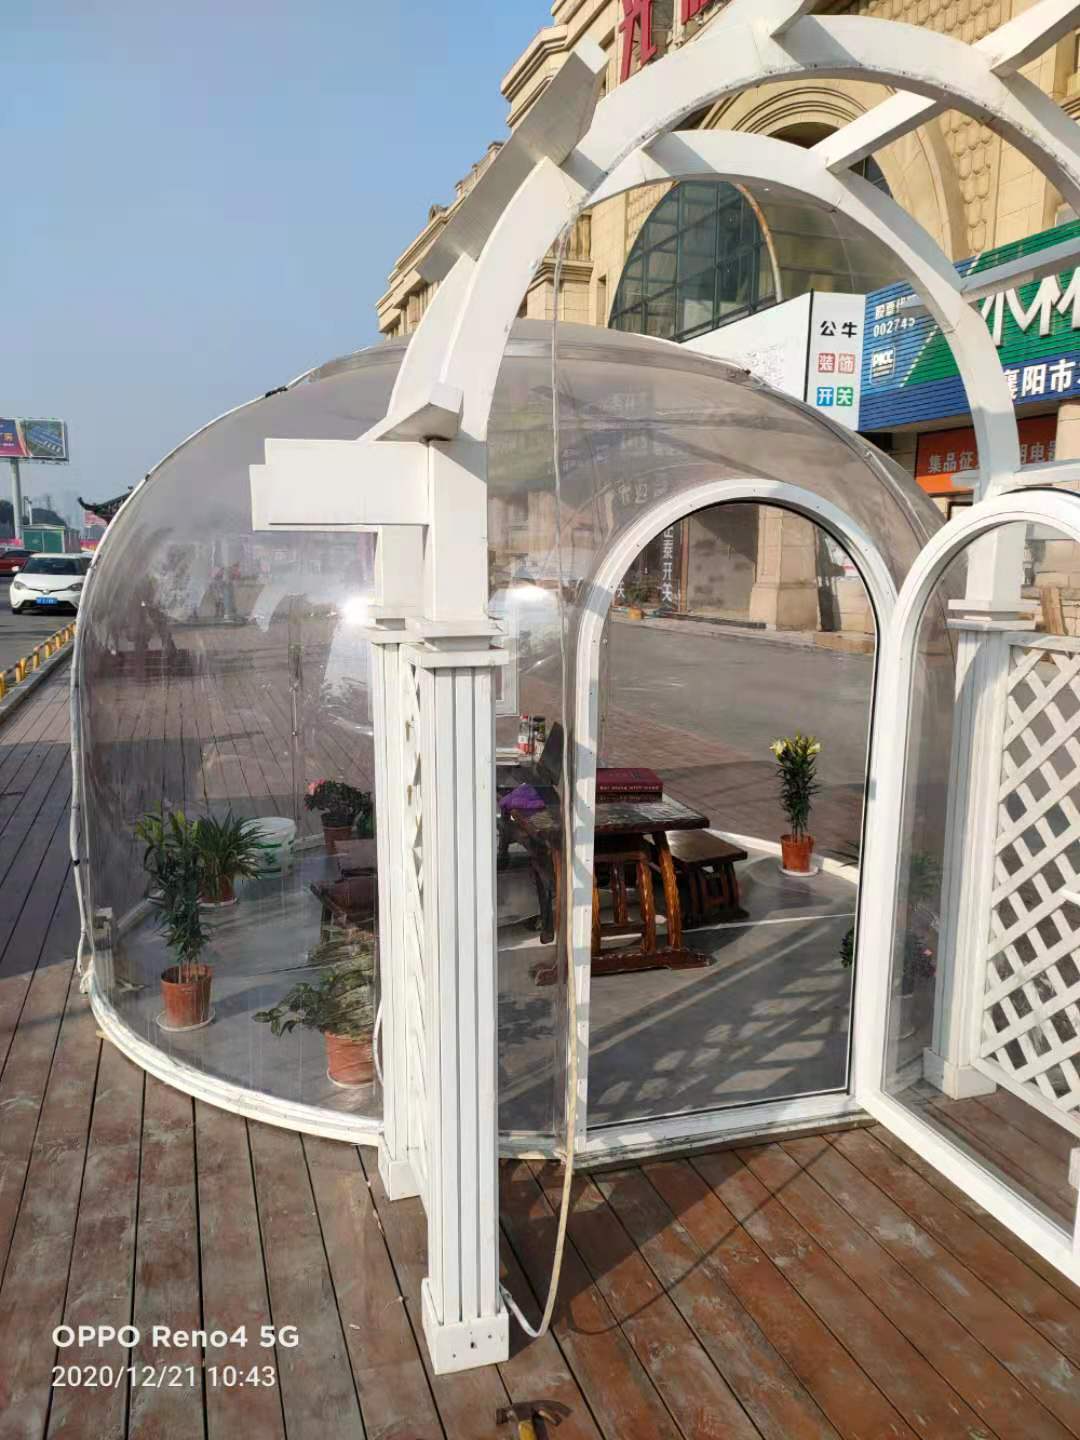 一家拥有超现实透明气泡房的茶馆